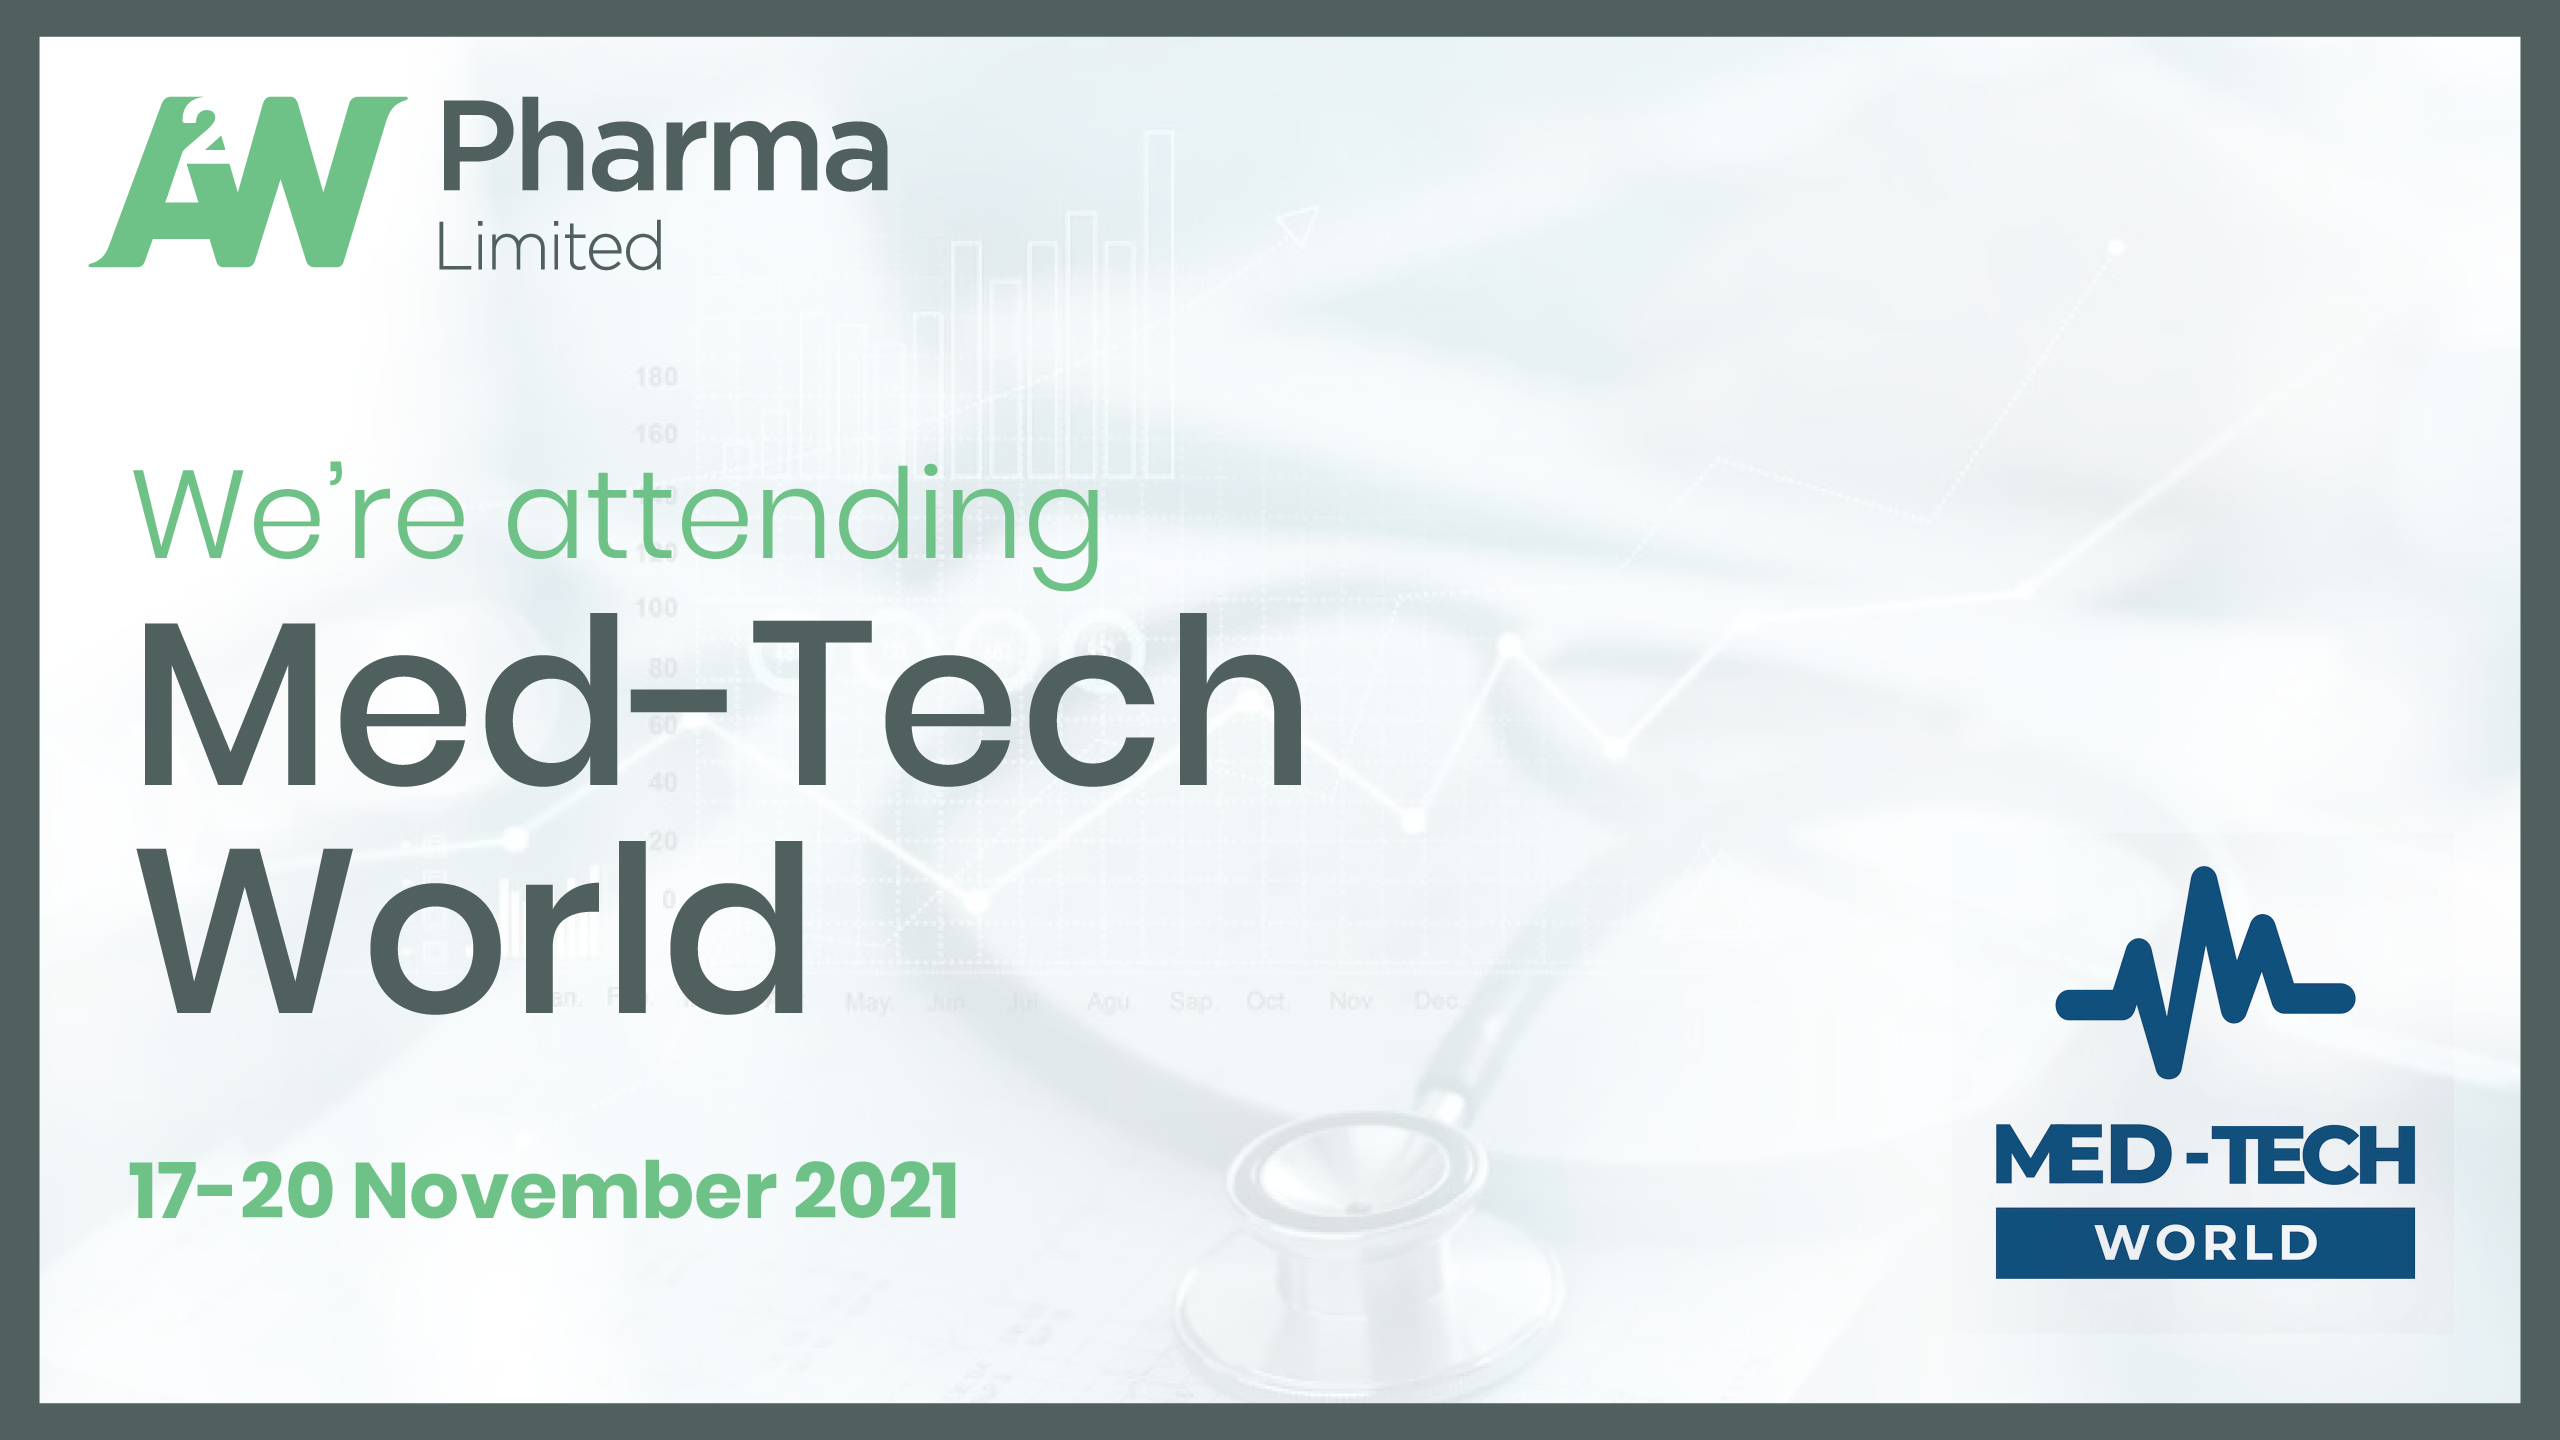 Med-tech World in Malta, 17-20 November 2021